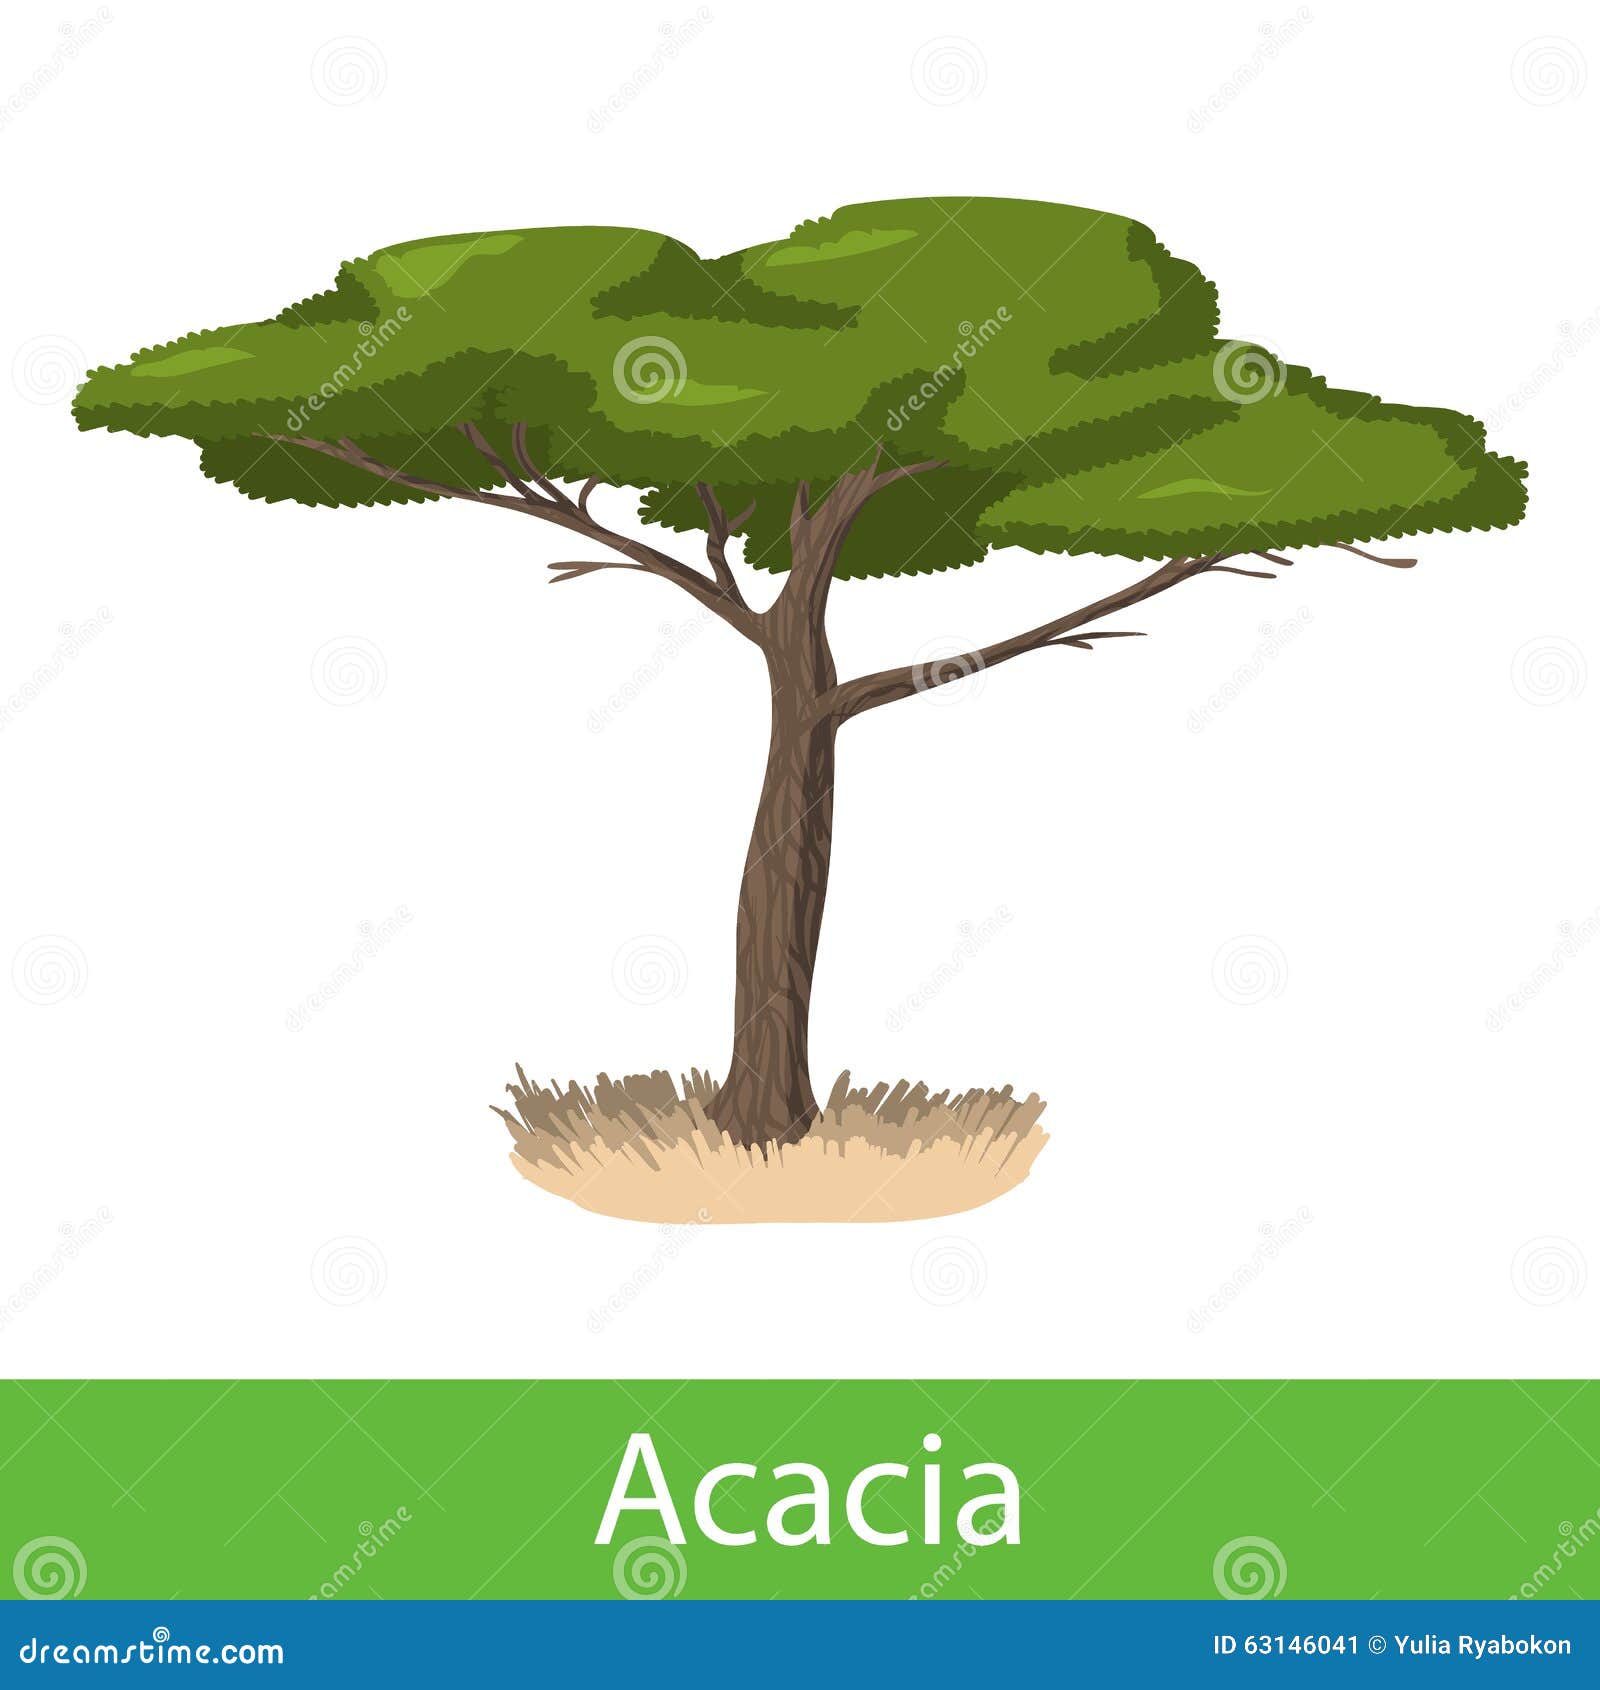 acacia tree clipart - photo #35